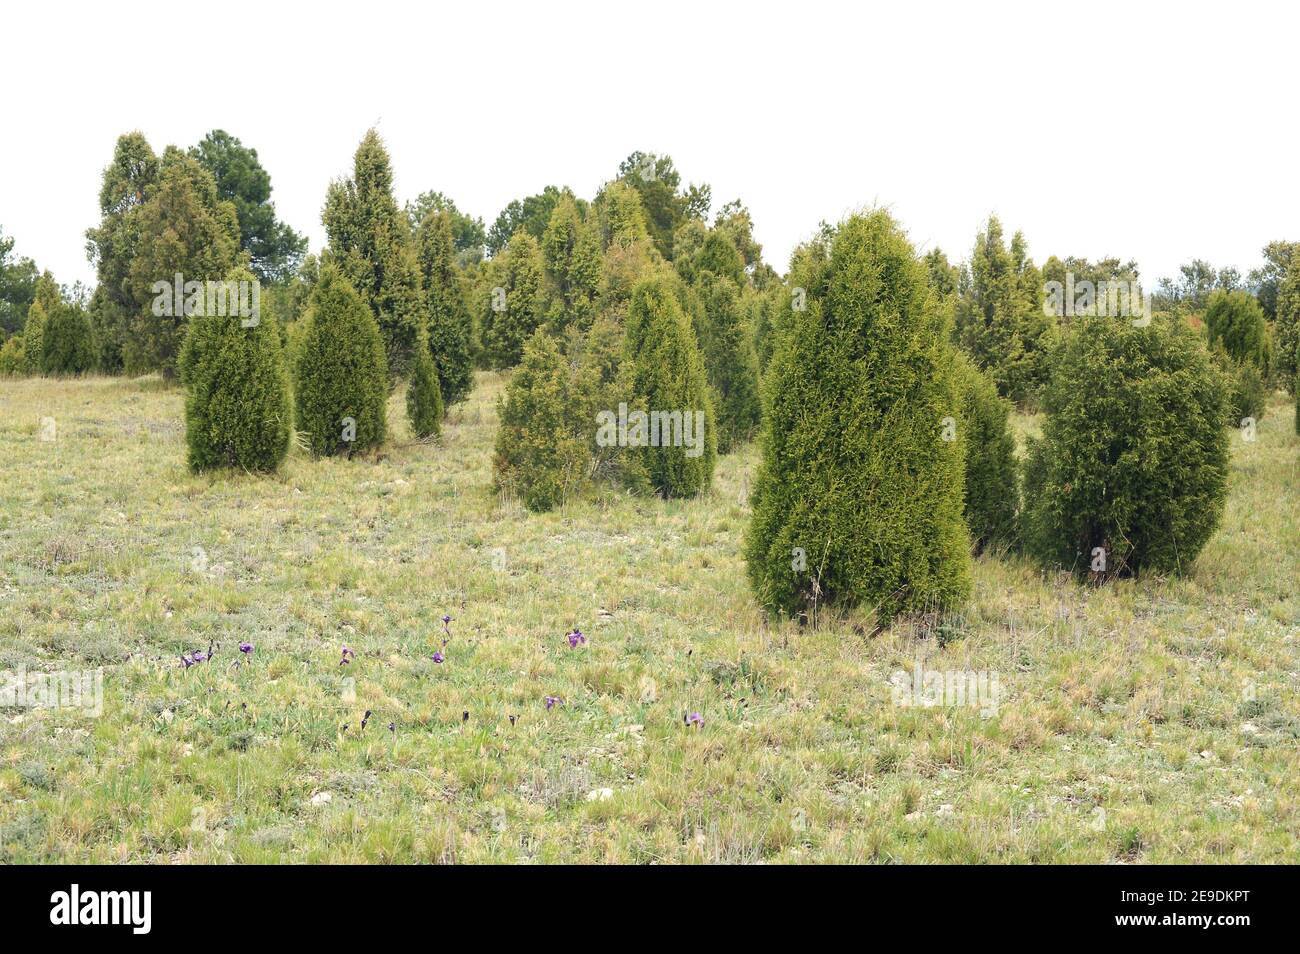 Cade geniper ou genièvre piquant (Juniperus oxycedrus) et genièvre phénicéen (Juniperus phoenicea) sont deux espèces d'arbustes à feuilles persistantes conifères Banque D'Images